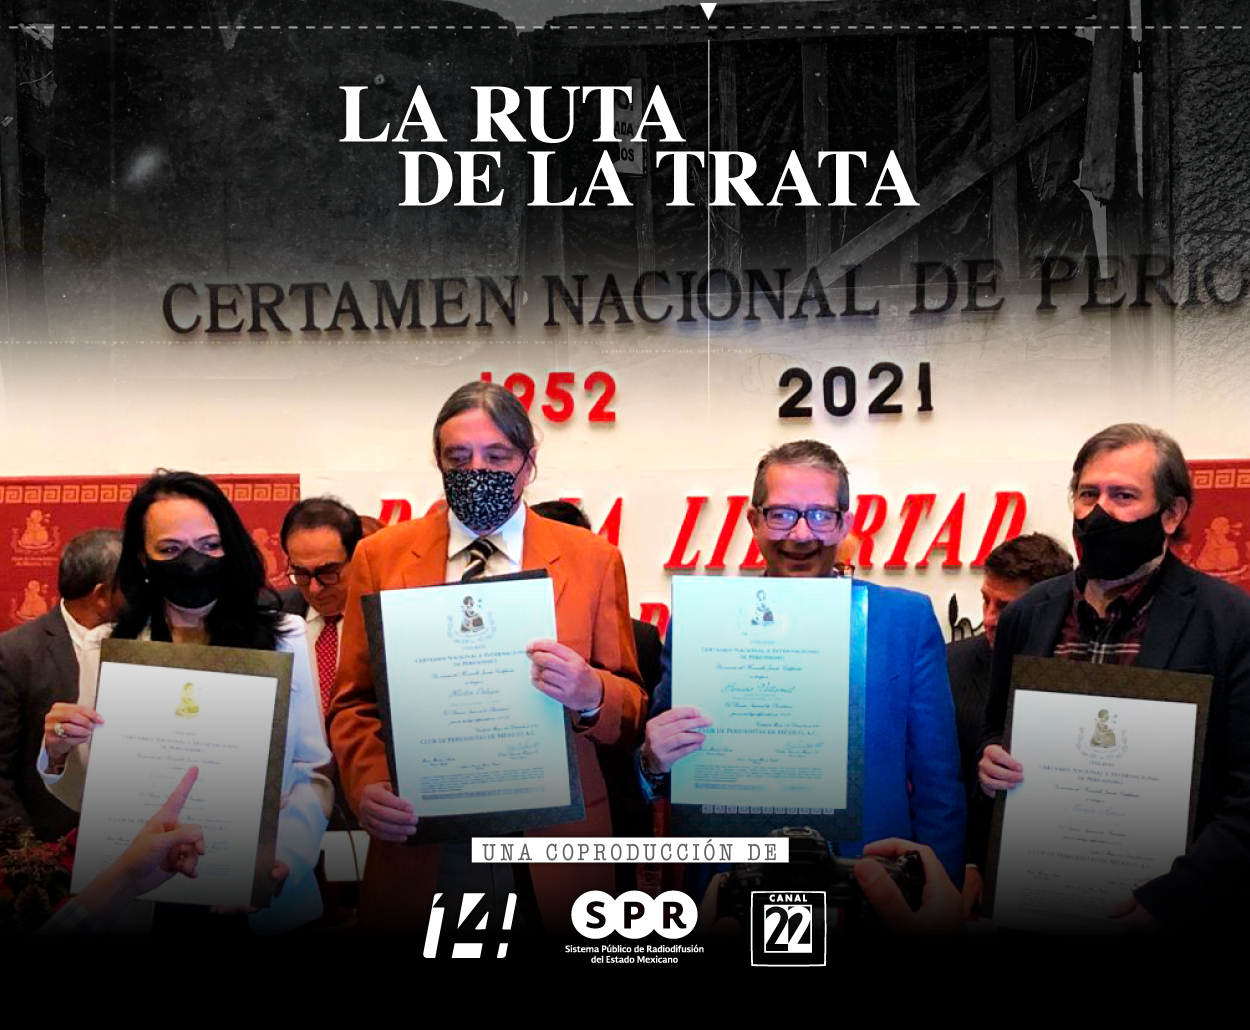 La serie “La Ruta de la Trata” obtuvo el Premio Nacional de Periodismo, que otorga el Club de Periodistas de México, A. C.